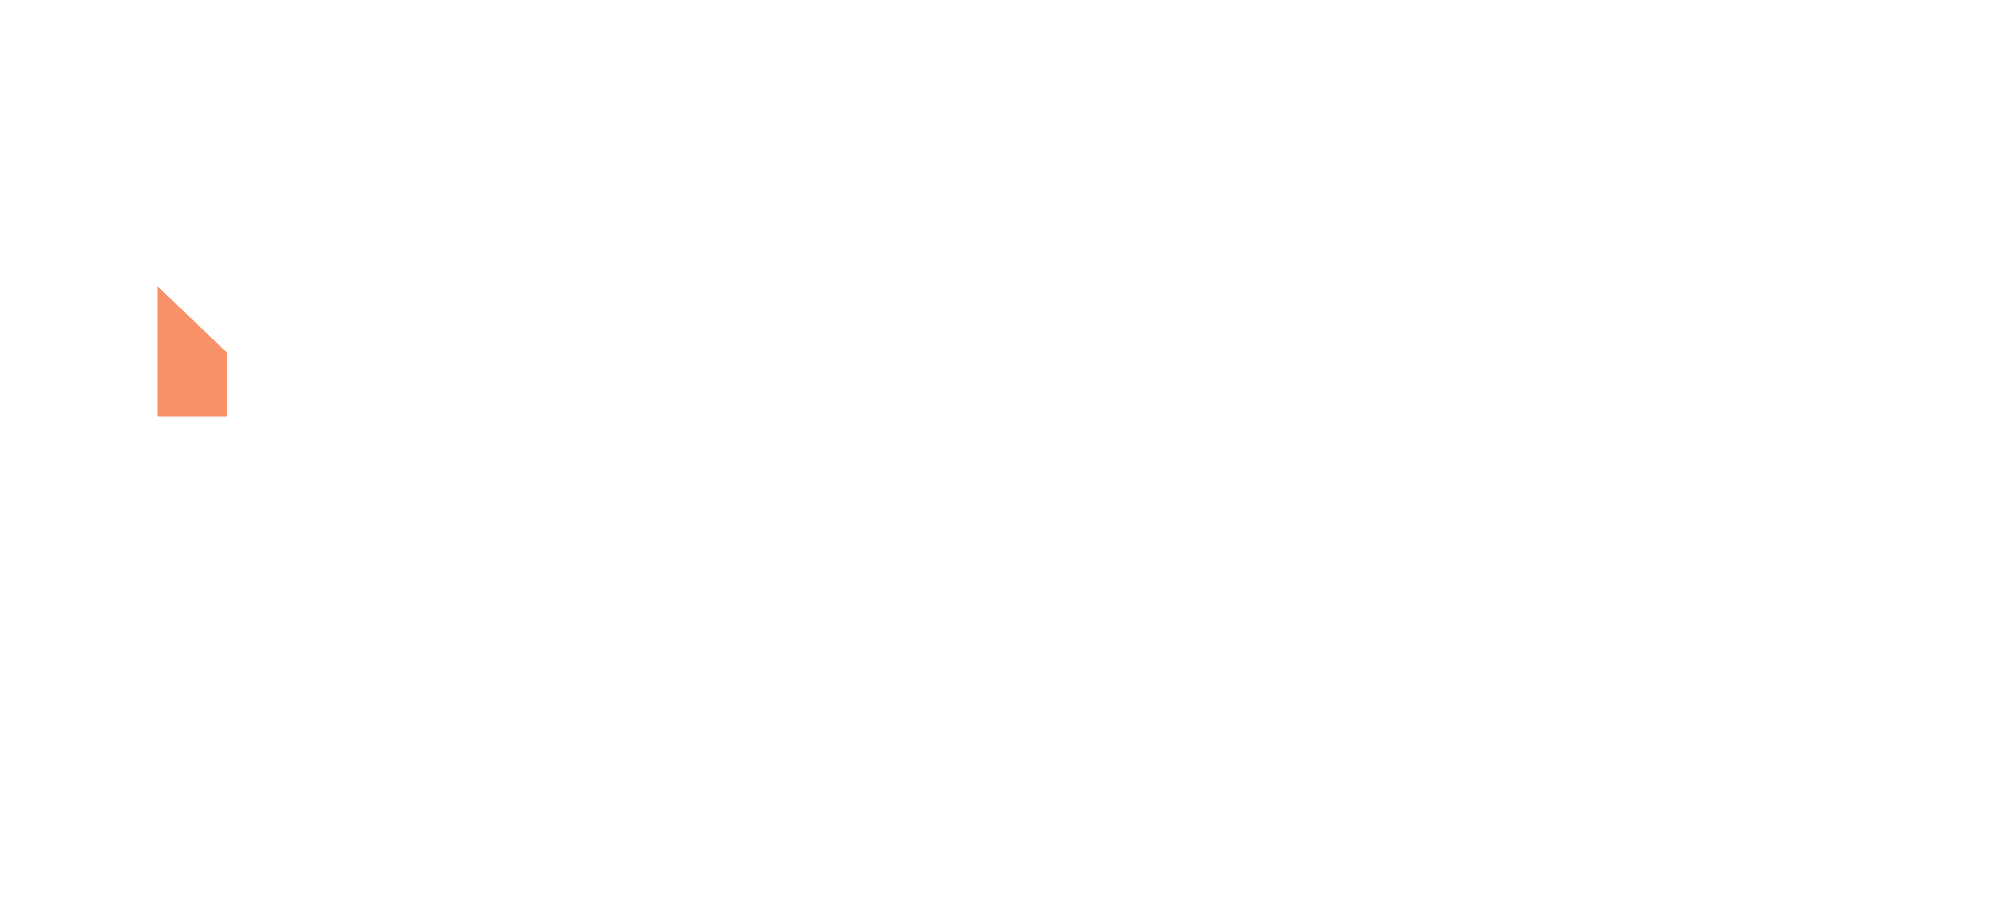 Instivity Logo